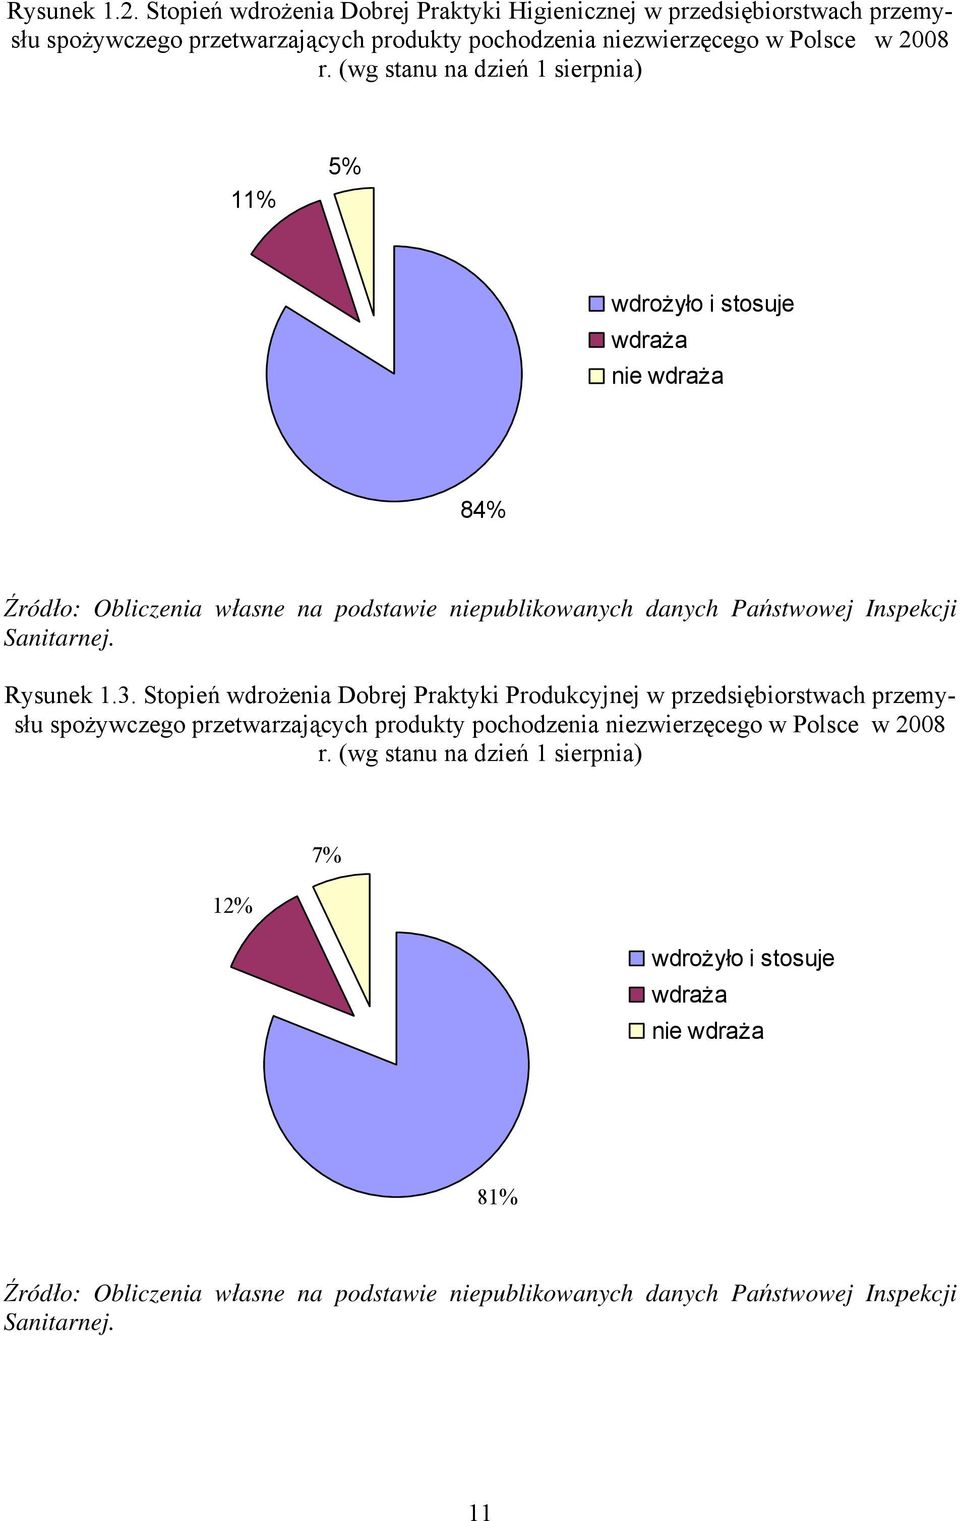 Rysunek 1.3. Stopień wdrożenia Dobrej Praktyki Produkcyjnej w przedsiębiorstwach przemysłu spożywczego przetwarzających produkty pochodzenia niezwierzęcego w Polsce w 2008 r.